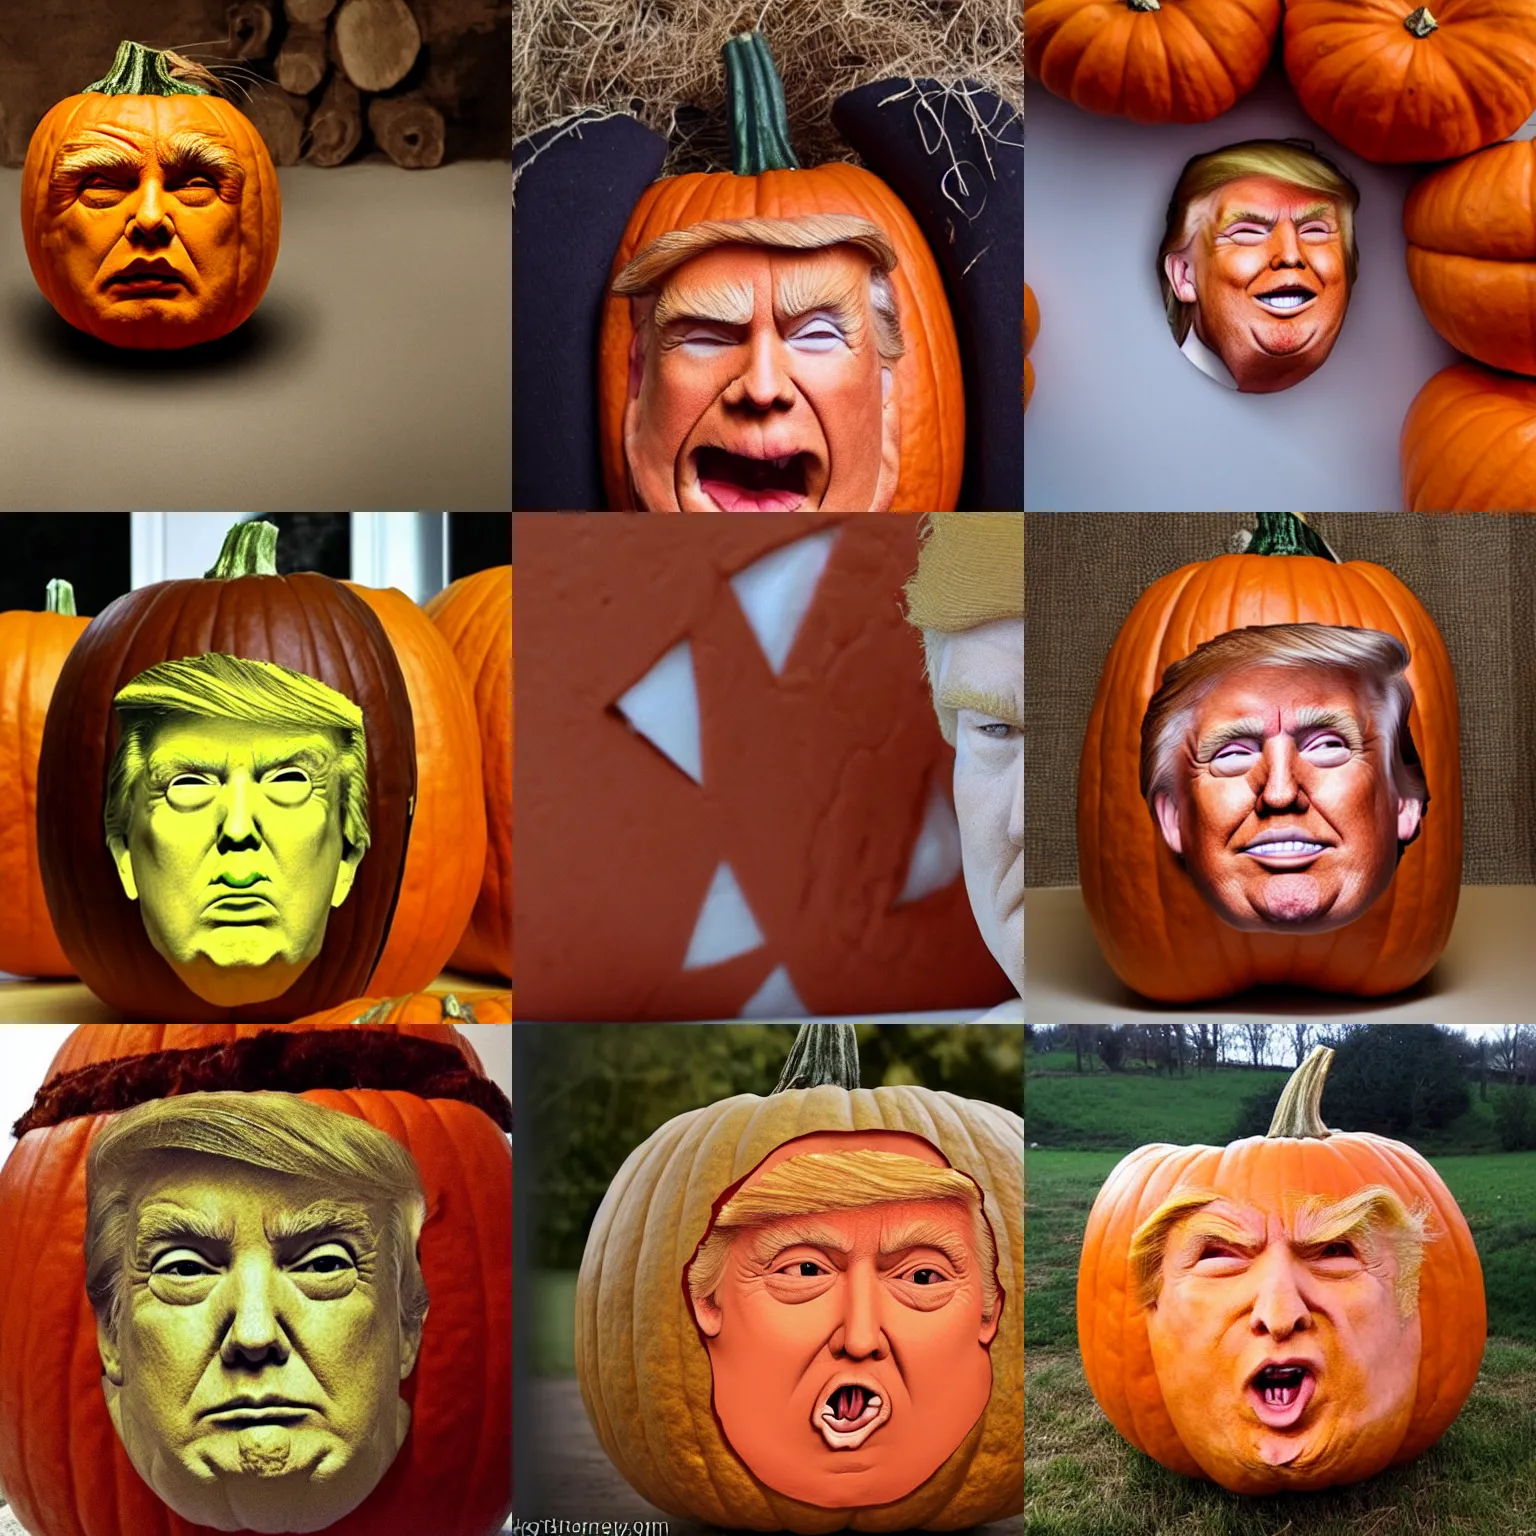 Prompt: donald trump face inside a pumpkin, pumpkin skin, messy hair, face, pumpkin